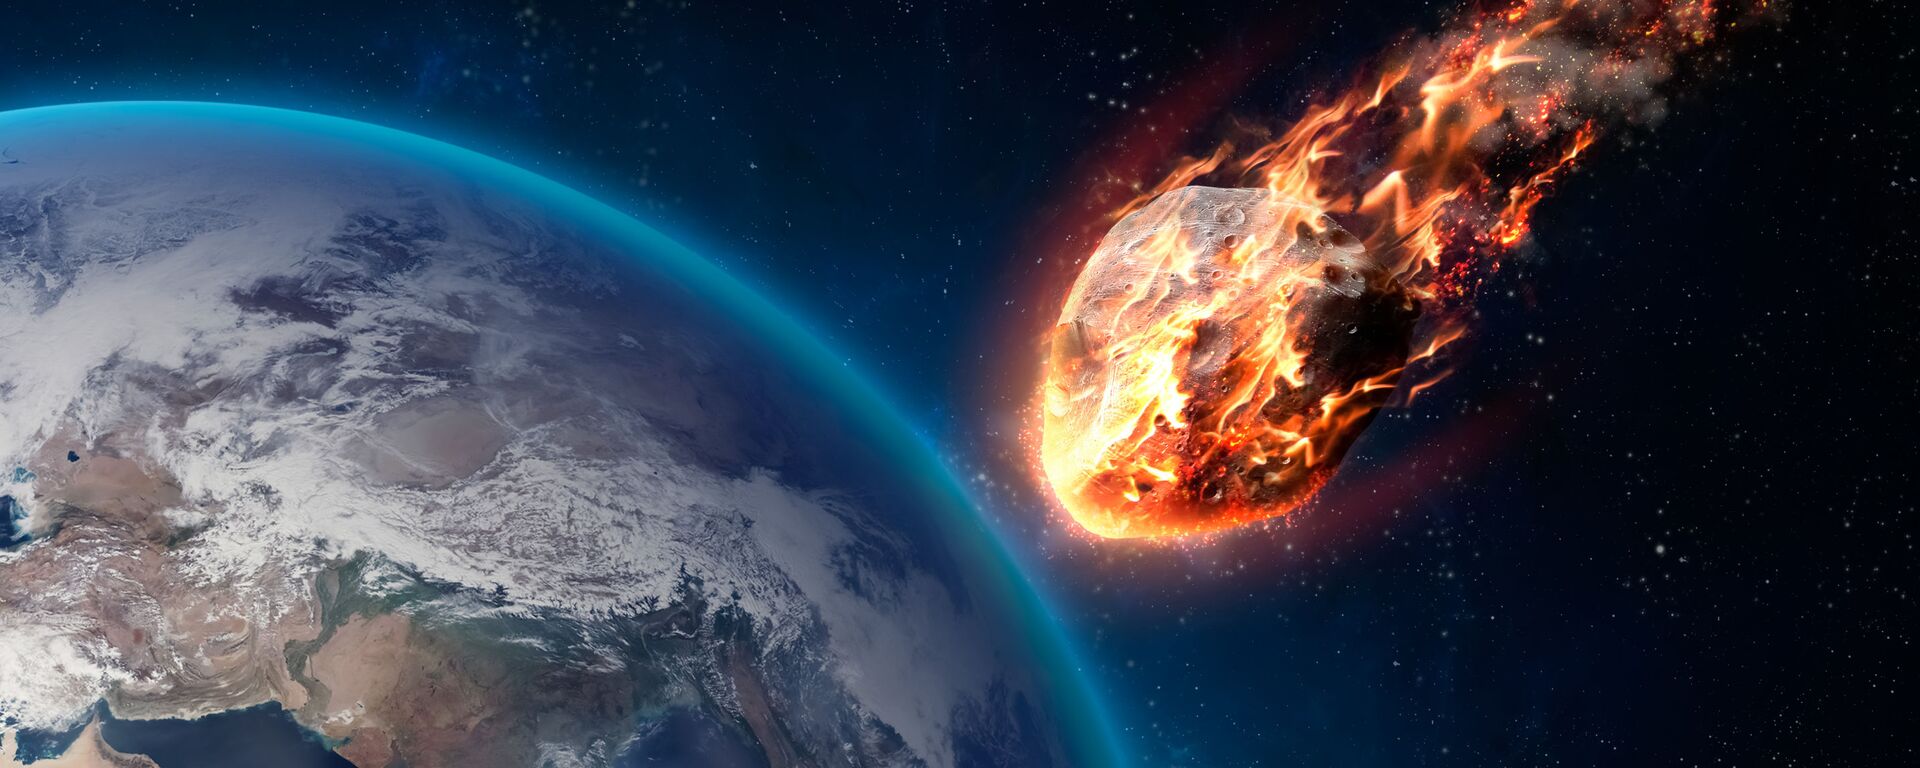 Gorashiy meteor vo vremya vxoda v atmosferu Zemli - Sputnik O‘zbekiston, 1920, 05.03.2021